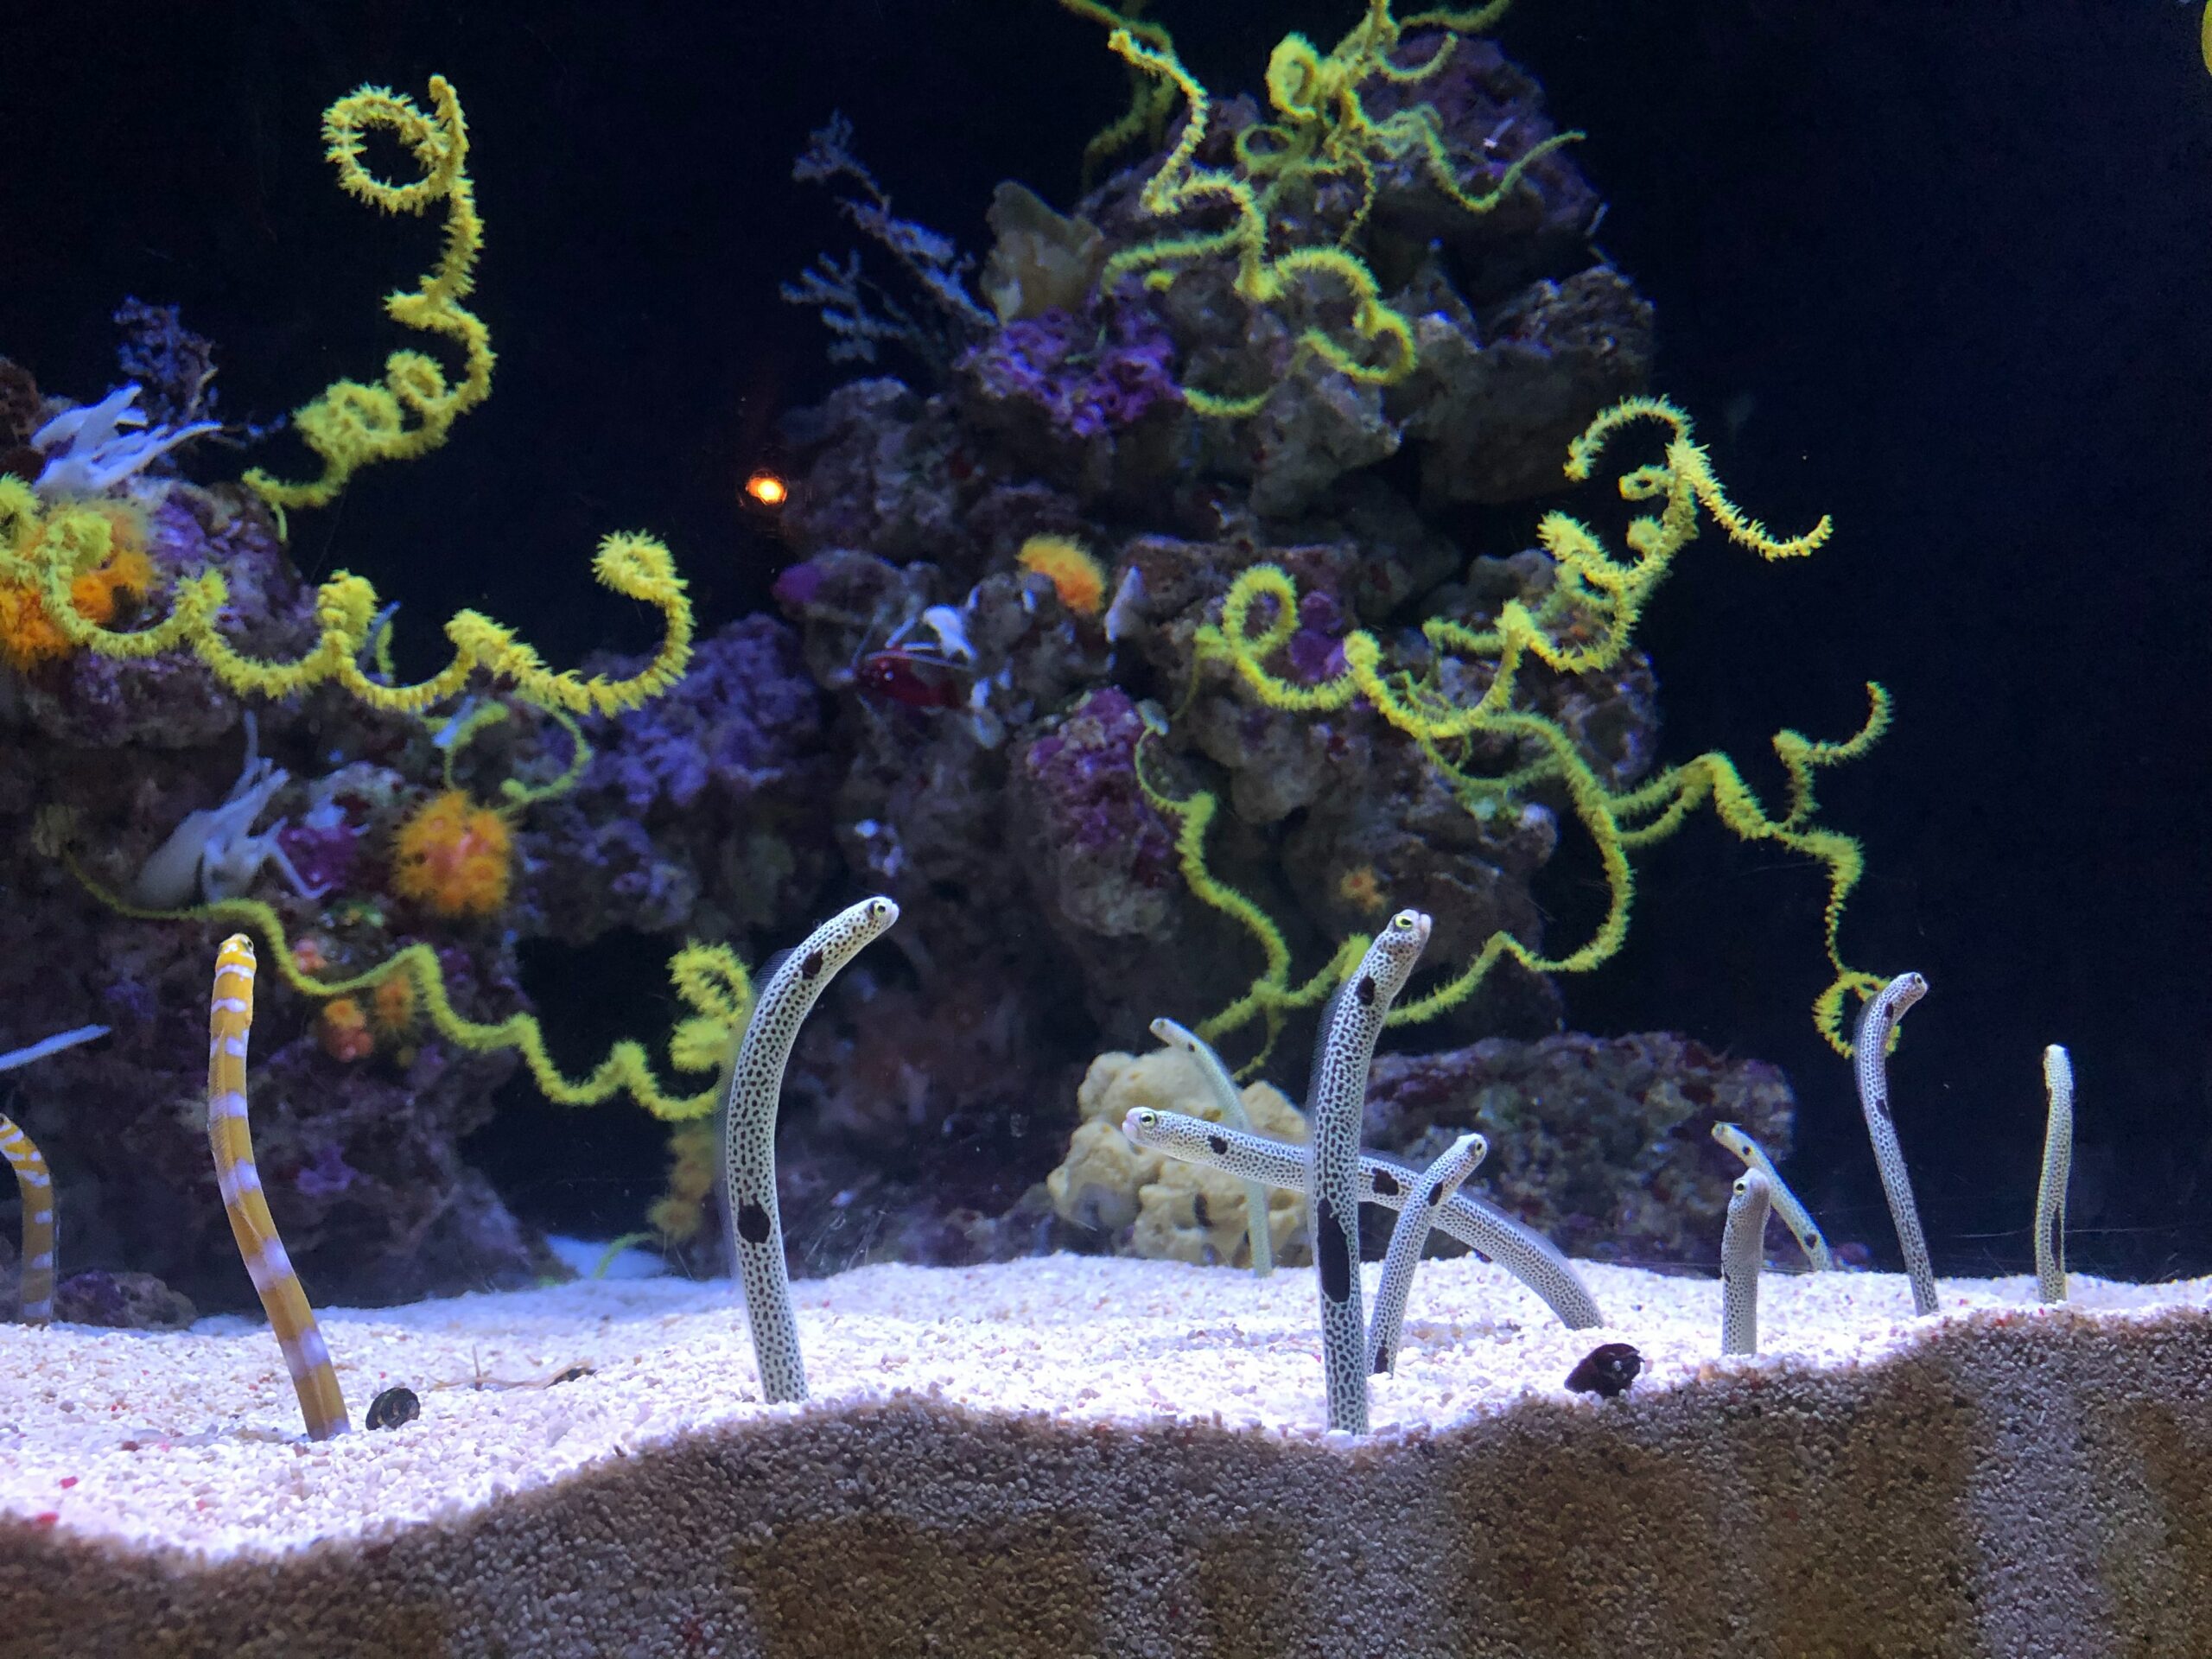 A fish tank of eels